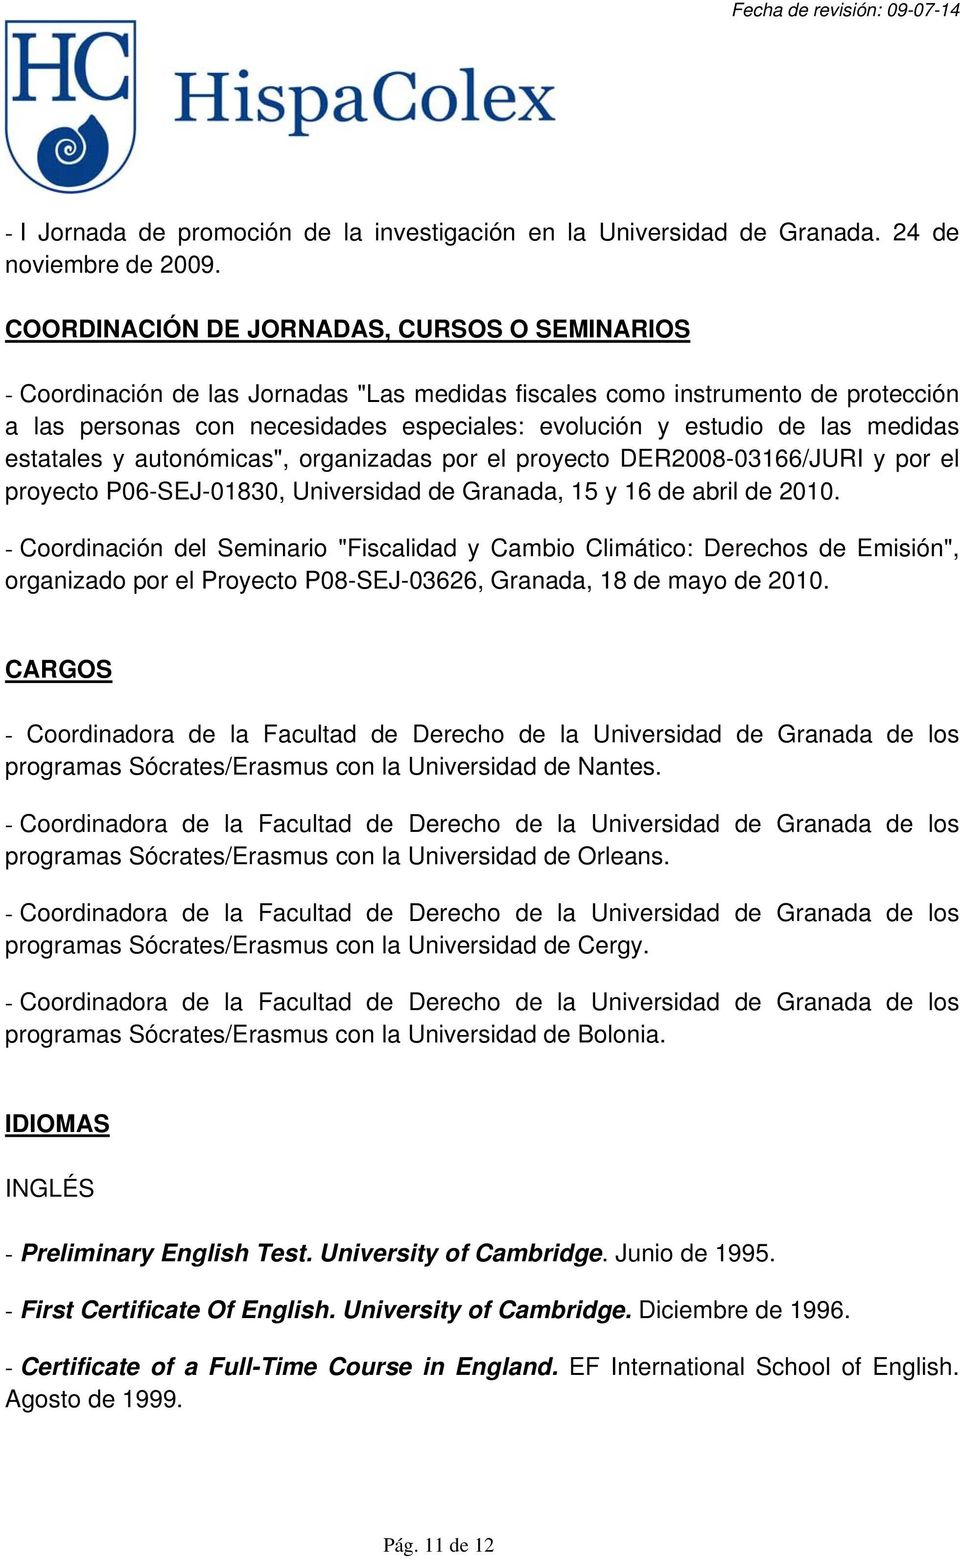 medidas estatales y autonómicas", organizadas por el proyecto DER2008-03166/JURI y por el proyecto P06-SEJ-01830, Universidad de Granada, 15 y 16 de abril de 2010.